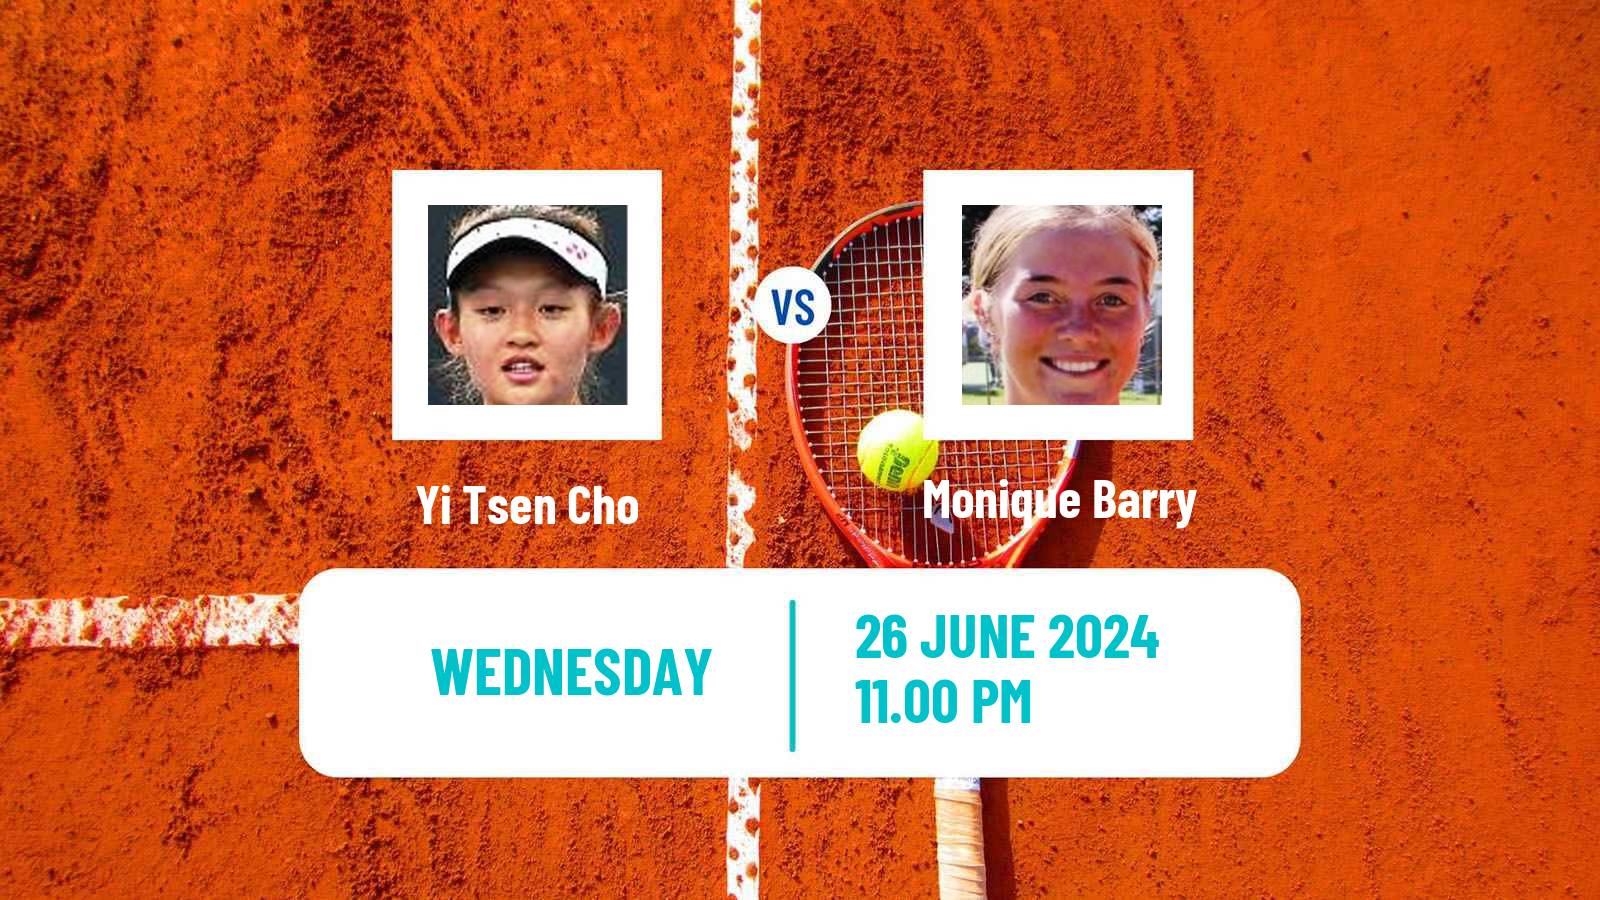 Tennis ITF W35 Taipei 2 Women Yi Tsen Cho - Monique Barry